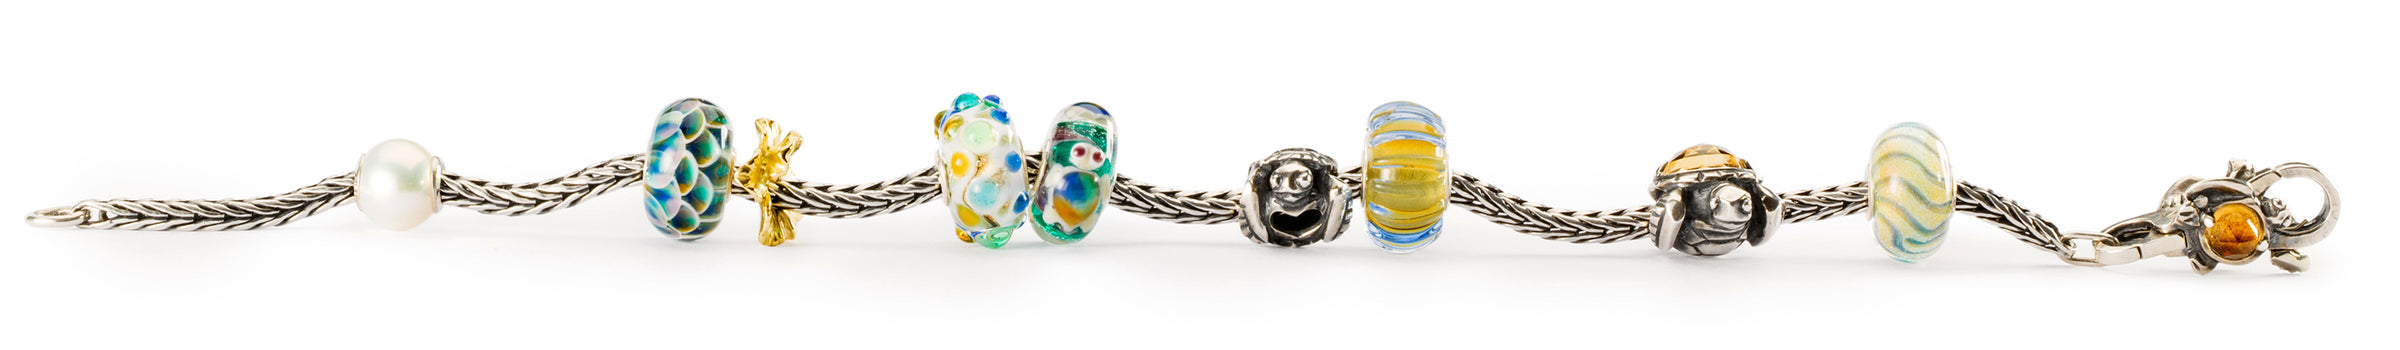 Trollbeads armbånd med skildpadde og hav tema inspireret kugler i glas og sølv